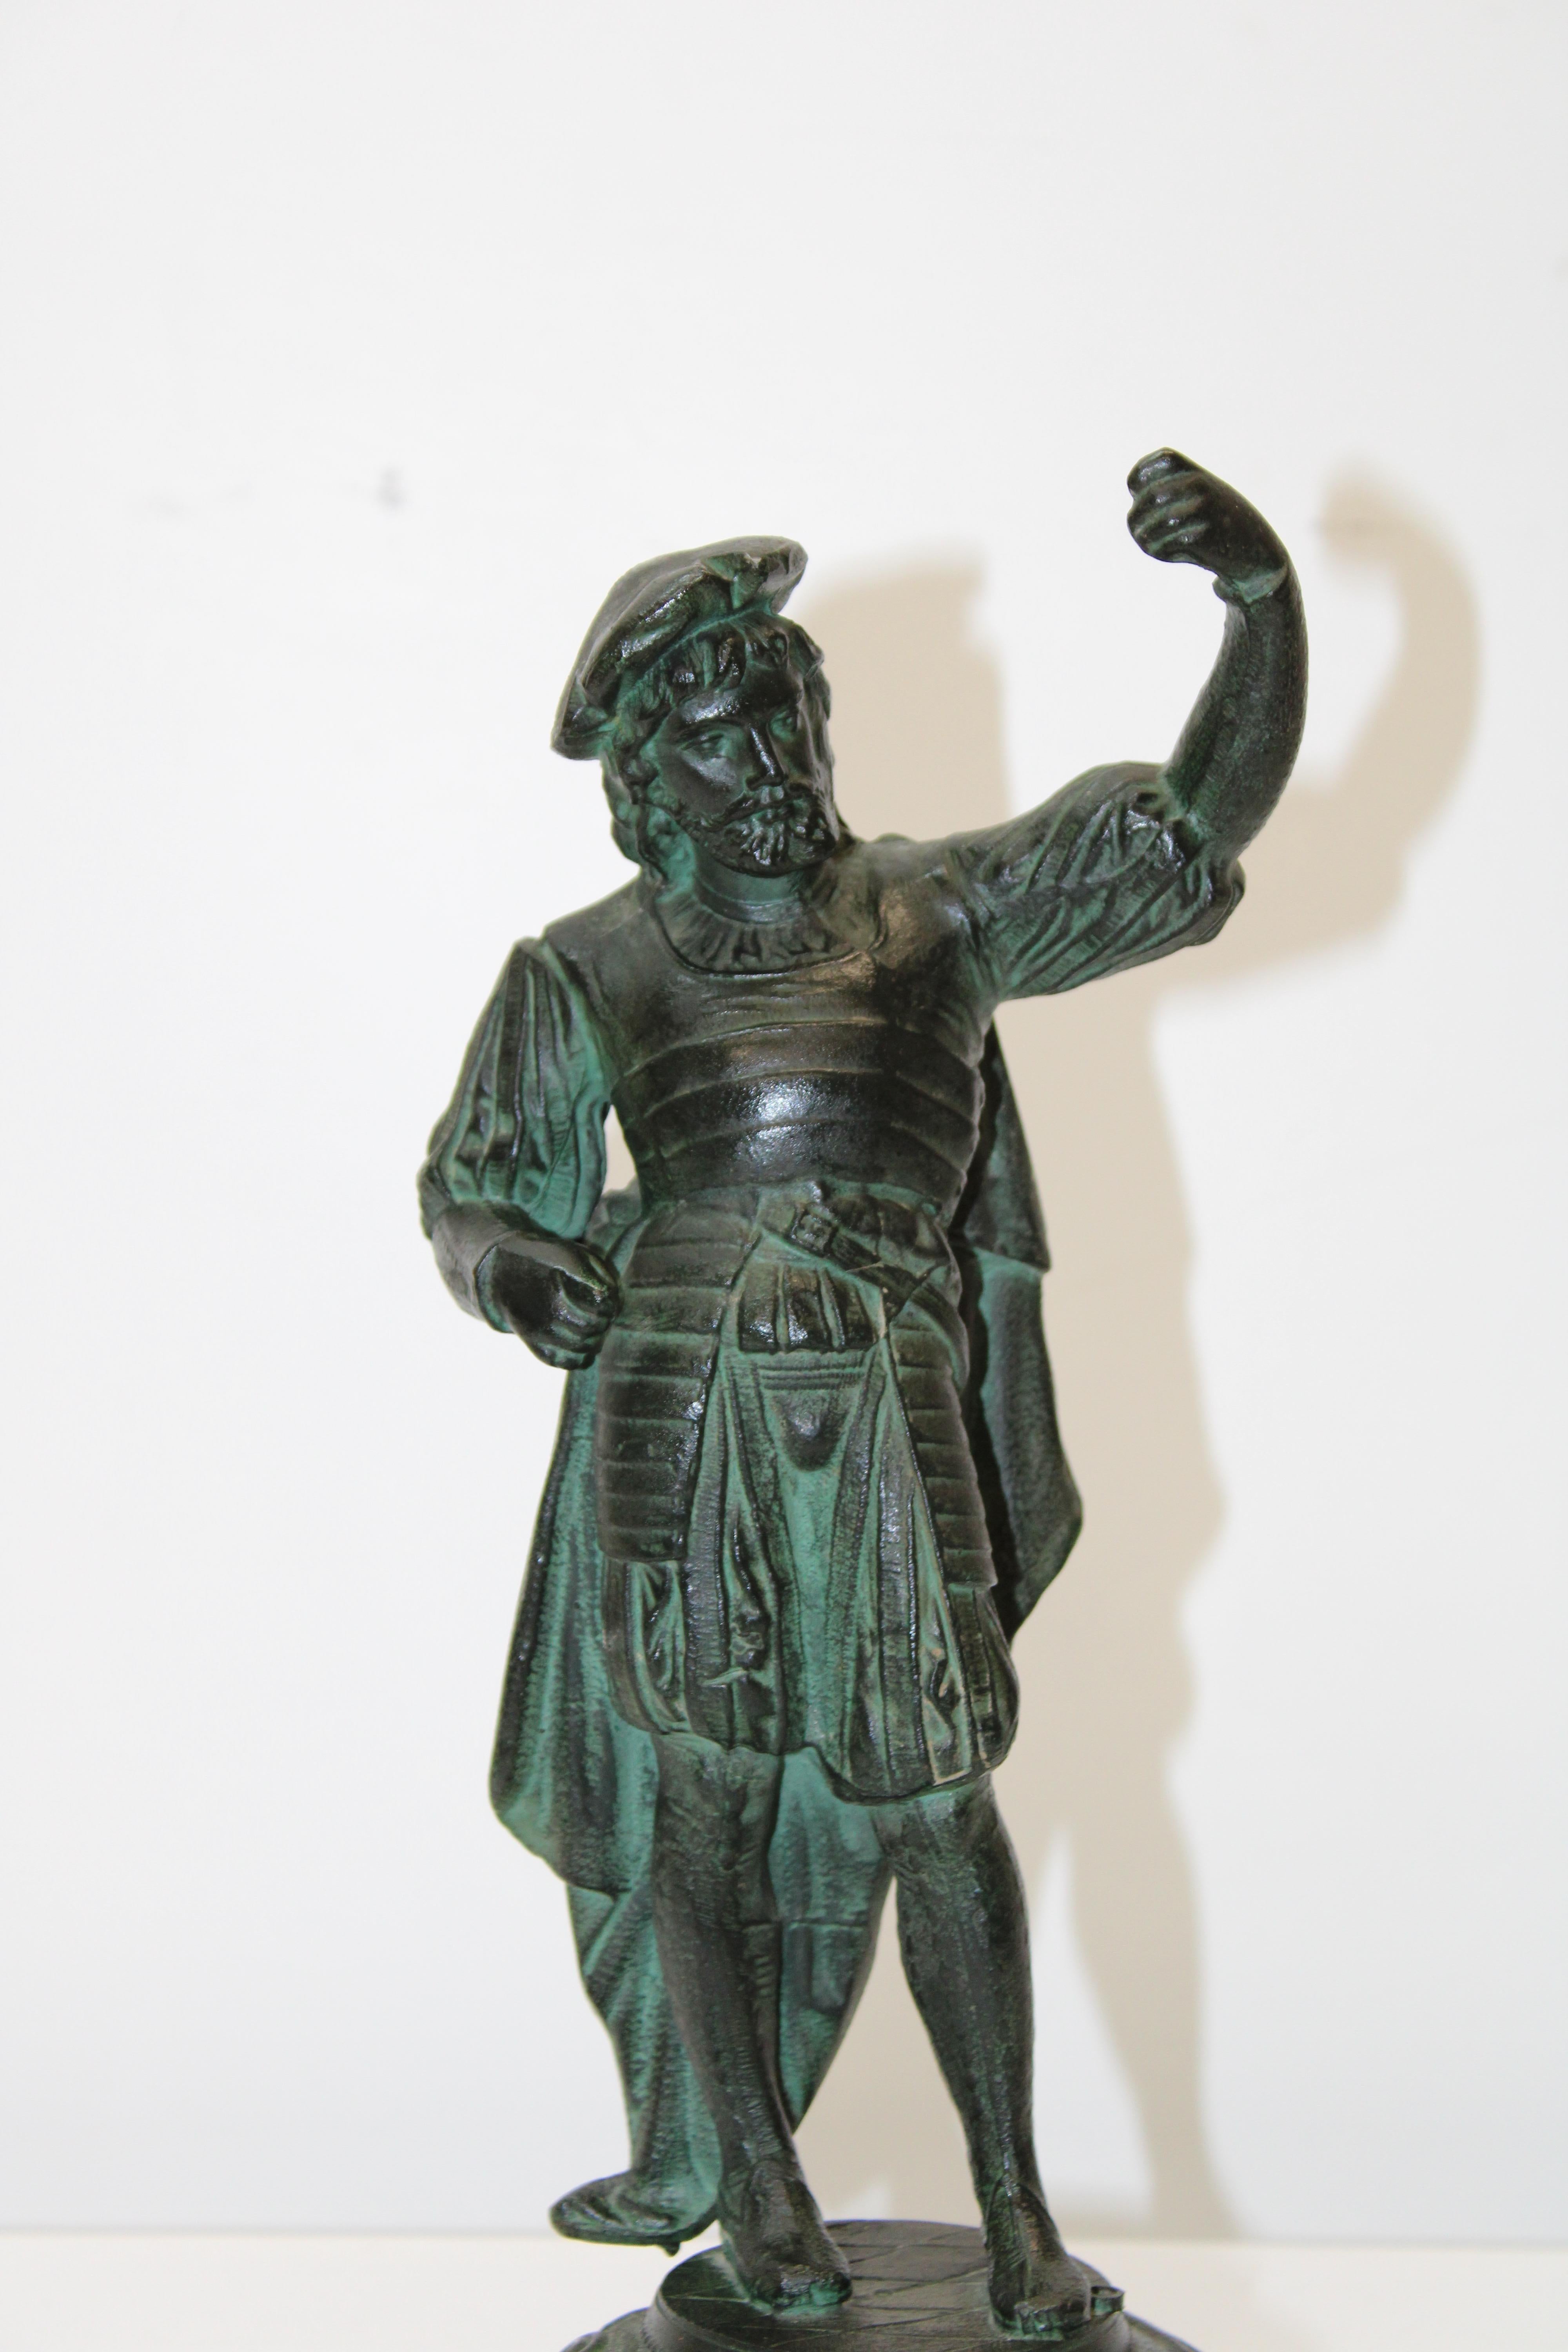 C.I.C. début du 20ème siècle

Sculpture en bronze d'un capitaine.